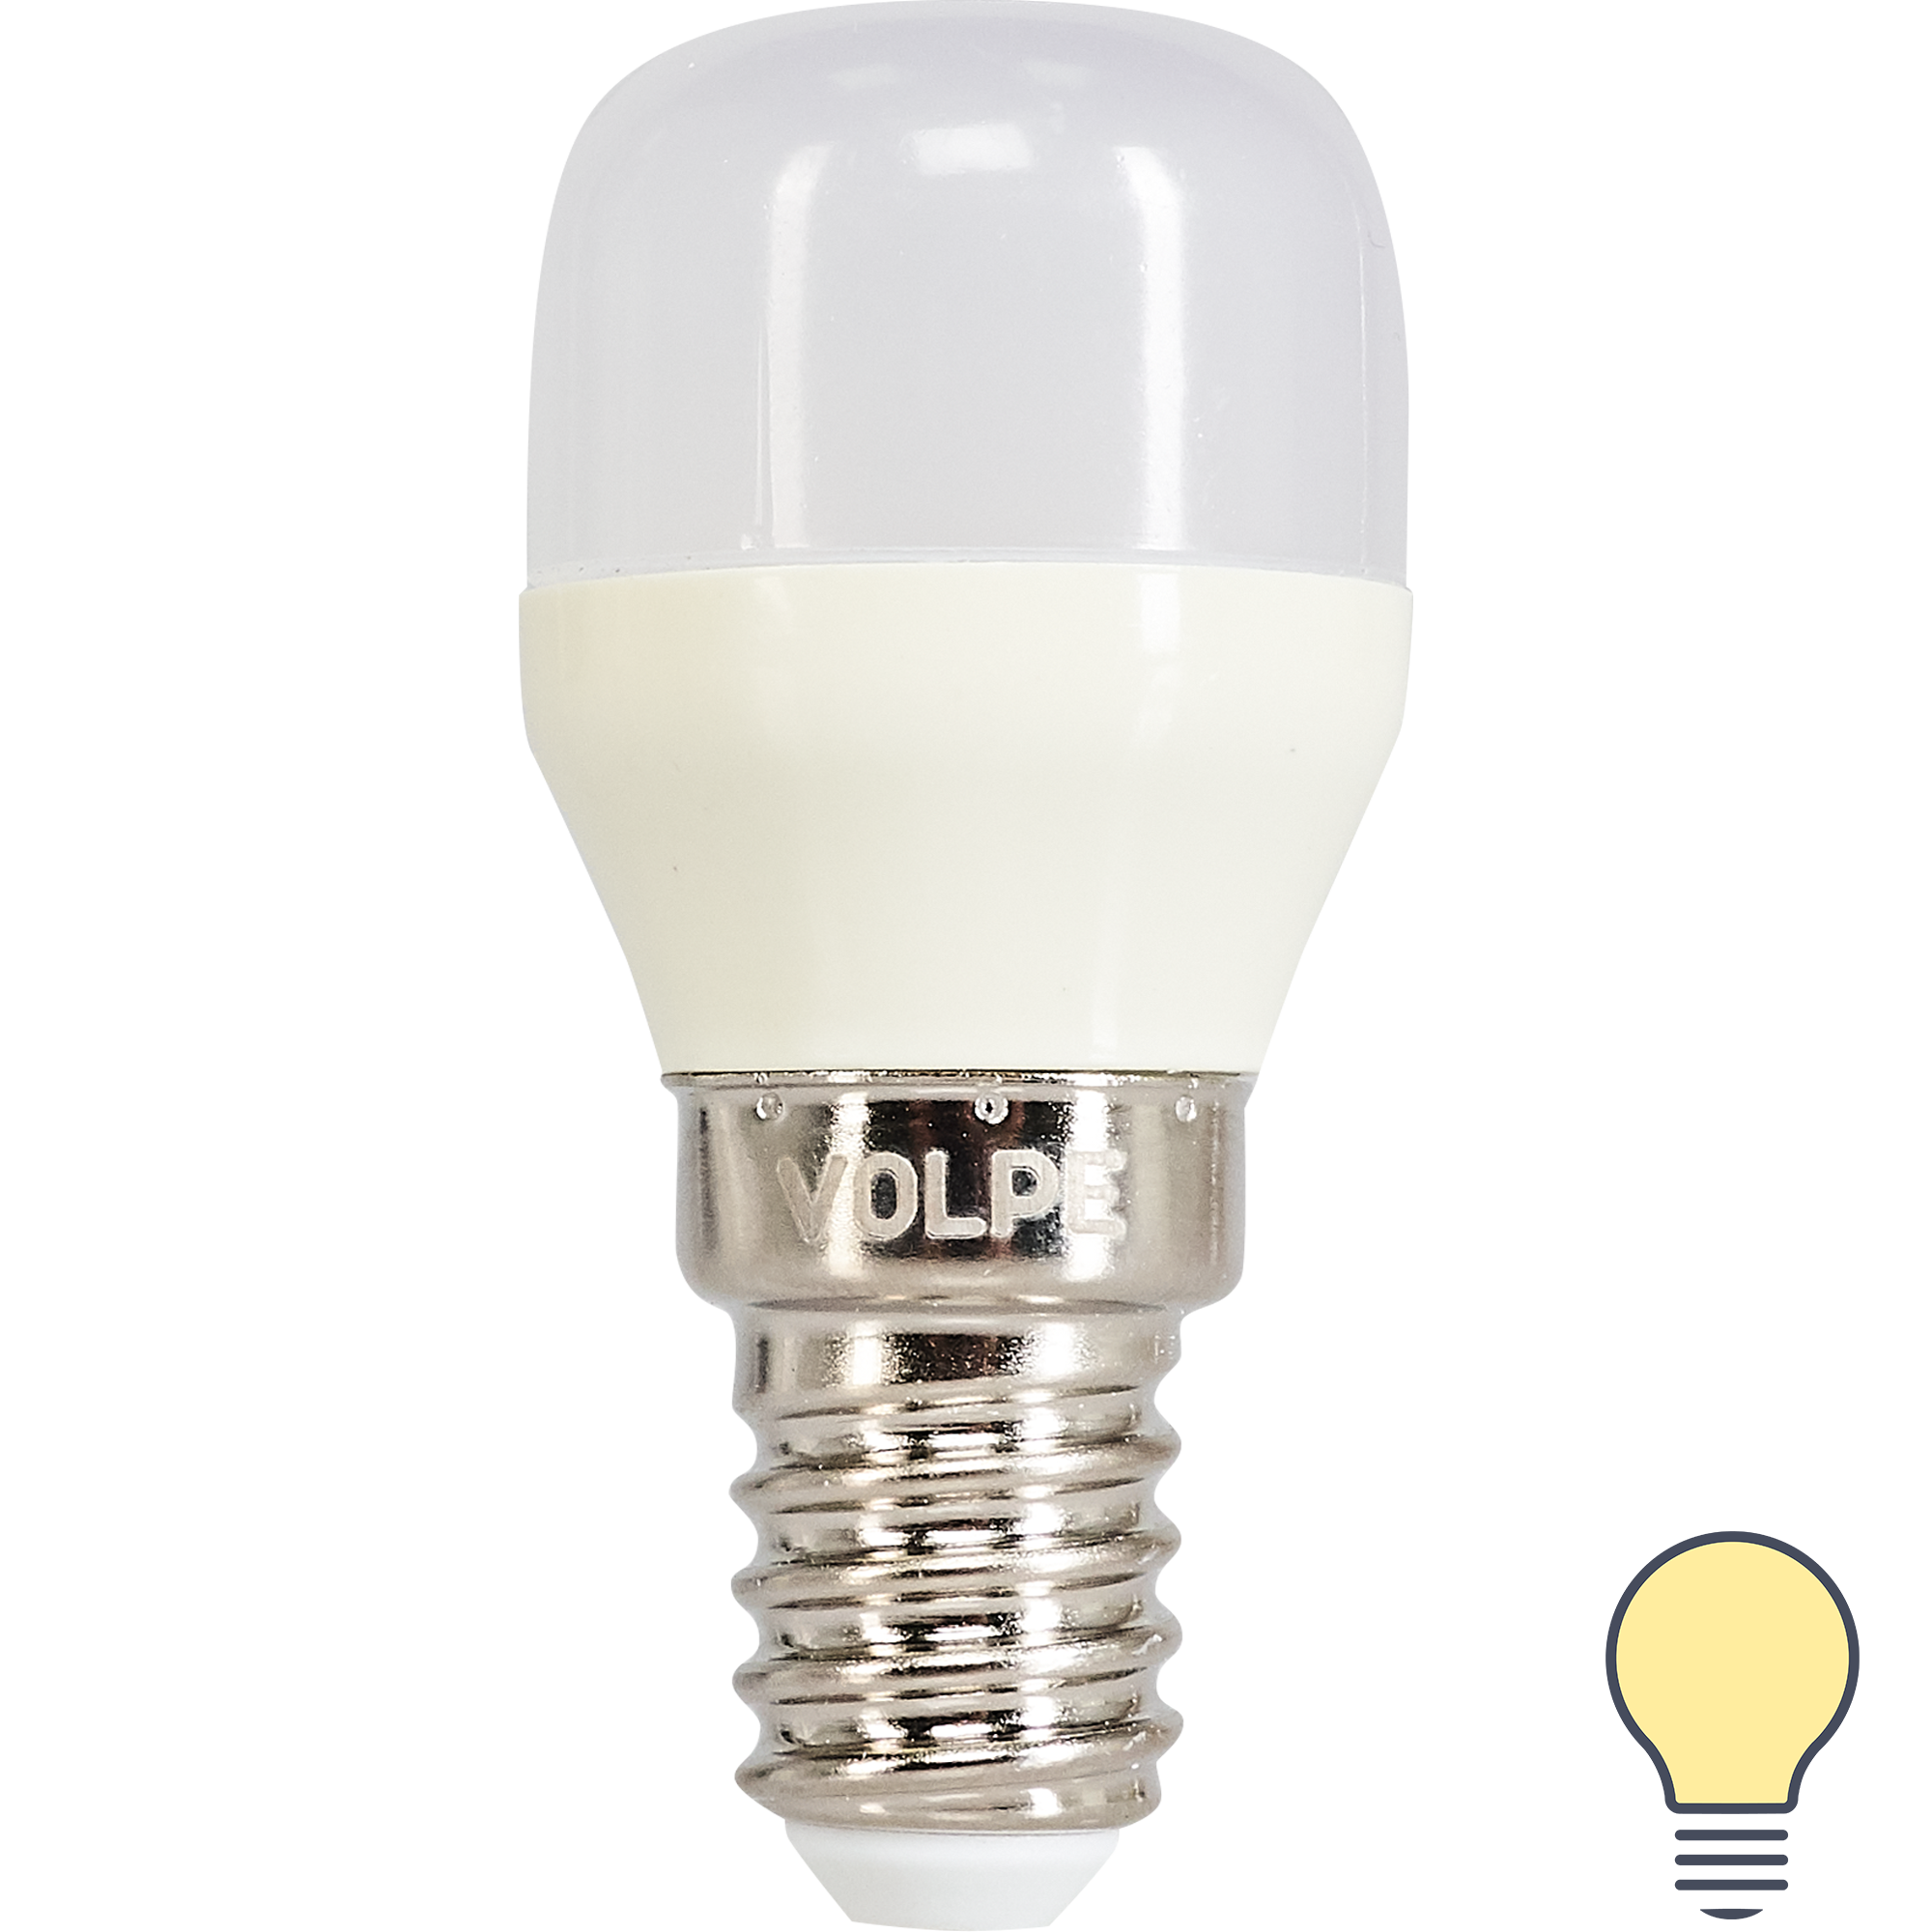 82263087 Лампа светодиодная для холодильника E14 220-240 В 3 Вт 250 Лм, тёплый белый свет STLM-0023523 VOLPE